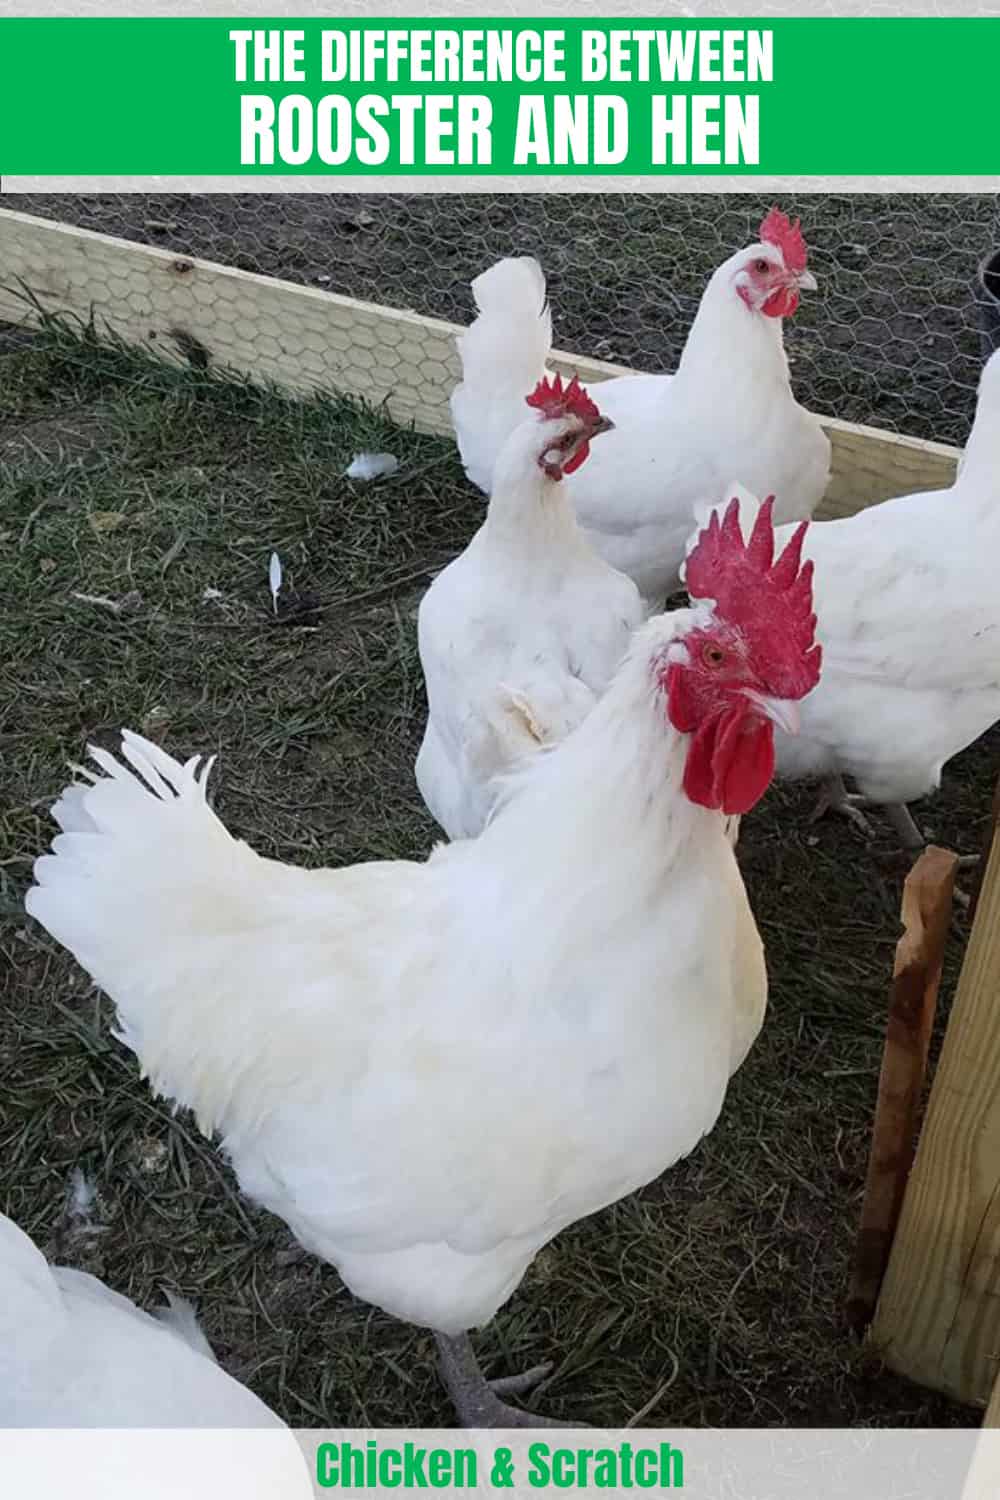 hen versus rooster